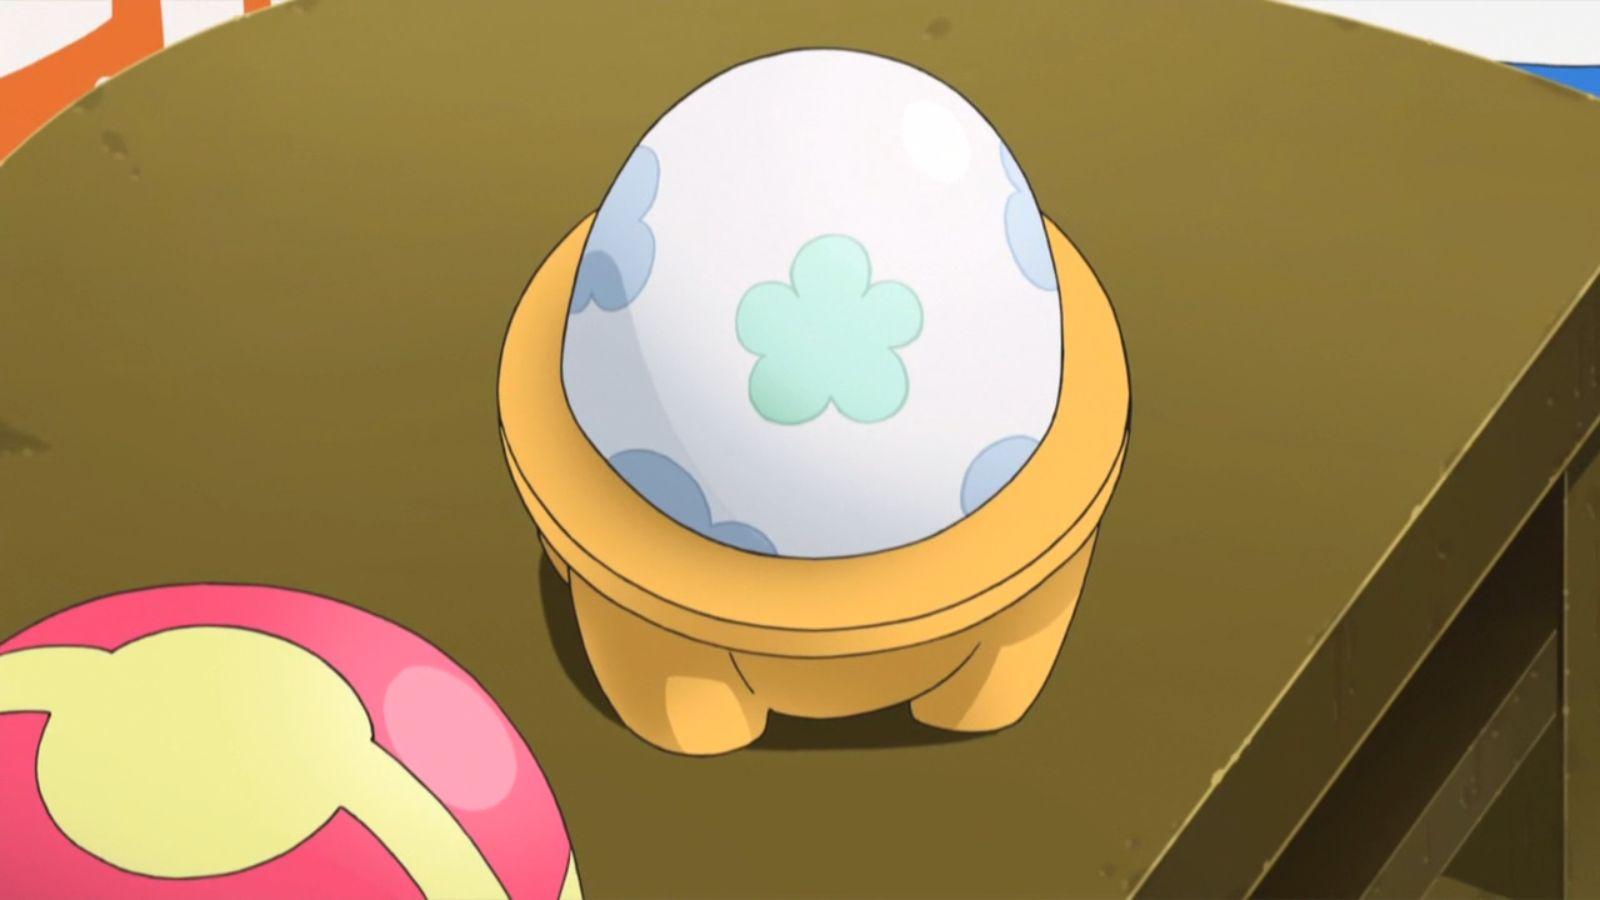 Pokemon Egg from Pokemon anime.